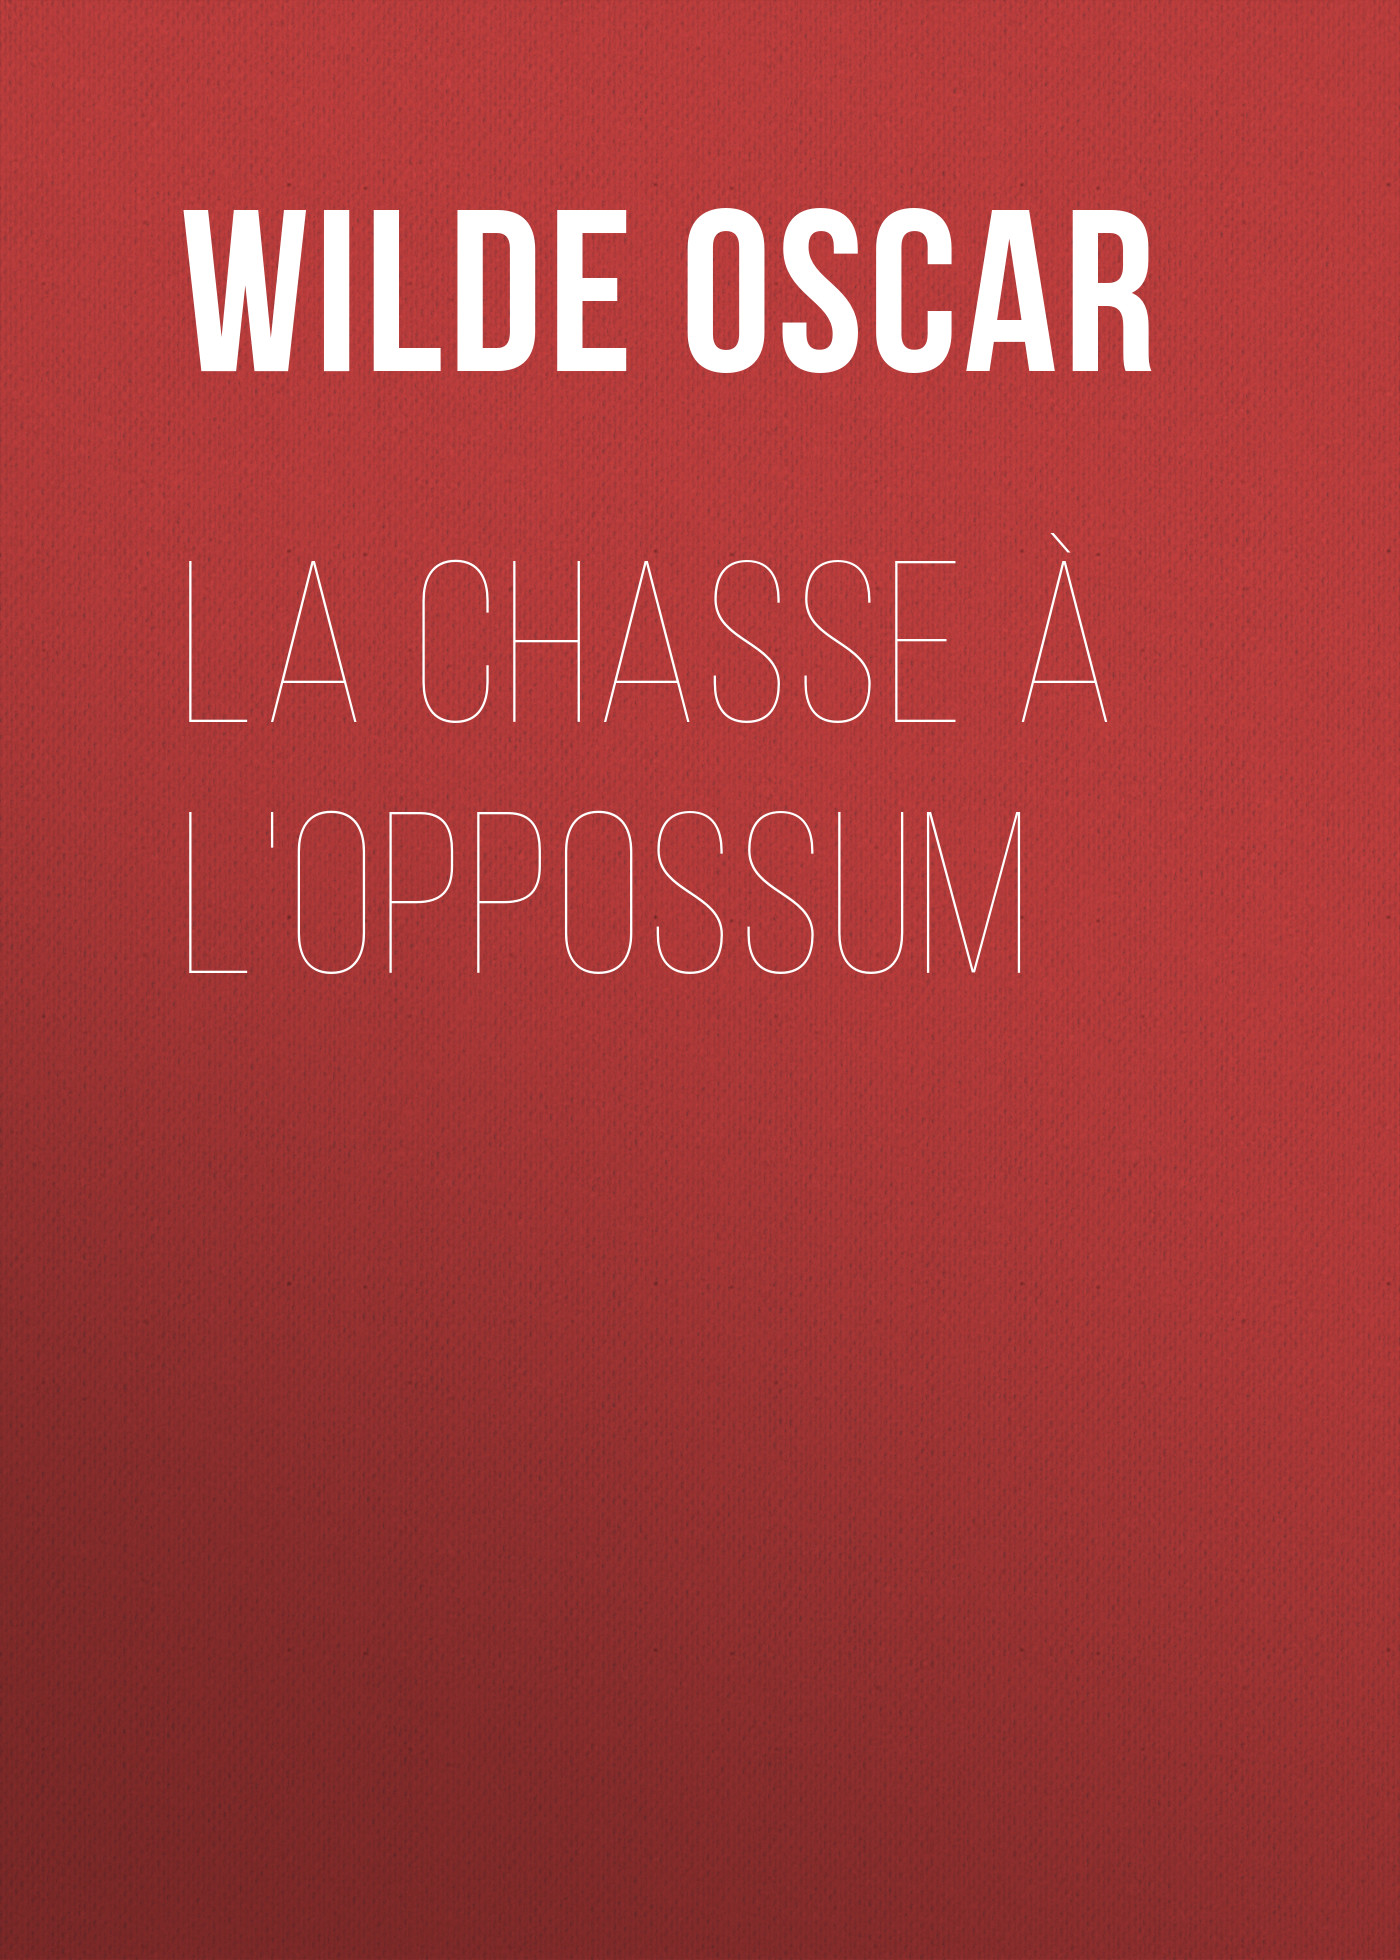 Книга La chasse à l'oppossum из серии , созданная Oscar Wilde, может относится к жанру Литература 19 века, Зарубежная классика. Стоимость электронной книги La chasse à l'oppossum с идентификатором 25561100 составляет 0 руб.